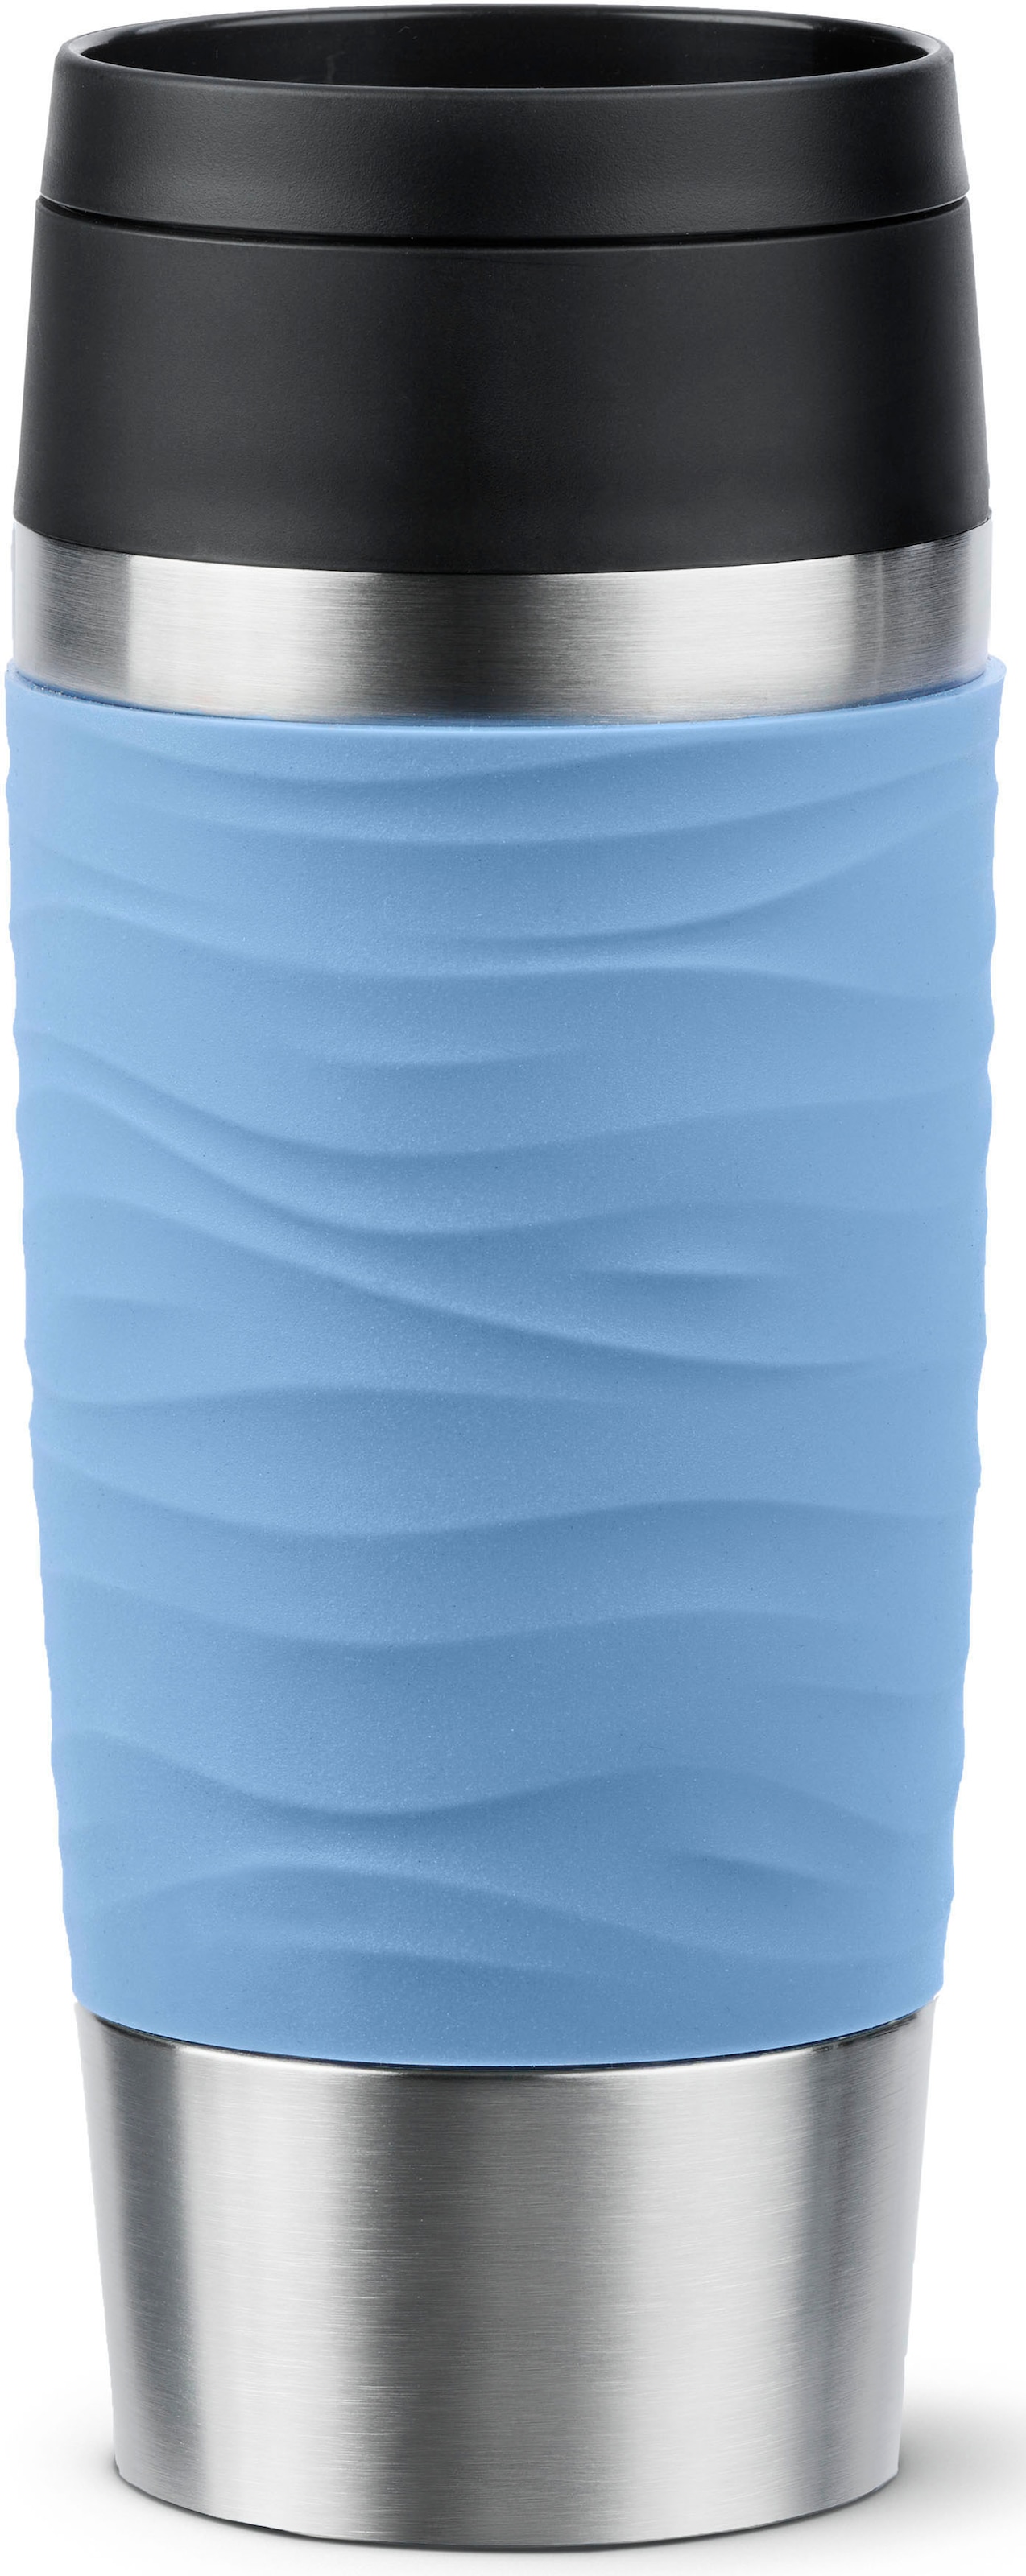 Emsa Thermobecher »Travel Mug Classic Wave«, 4h heiß, 8h kalt, 100% dicht, spülmaschinenfest, 360°-Trinköffnung